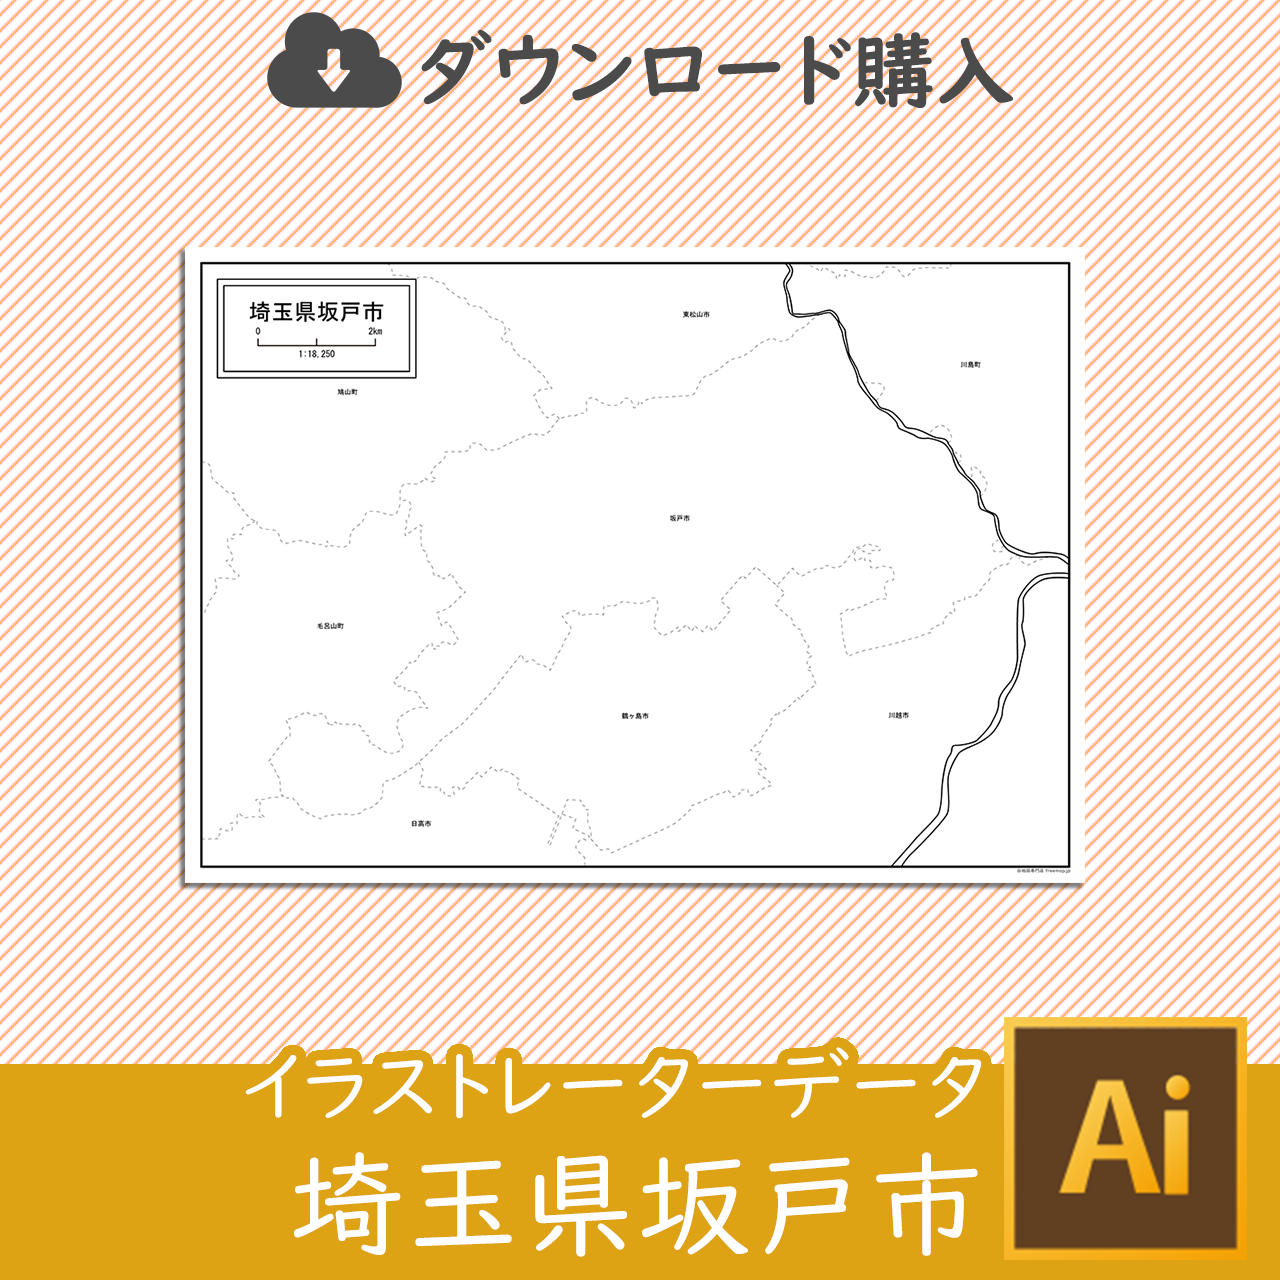 坂戸市のaiデータのサムネイル画像